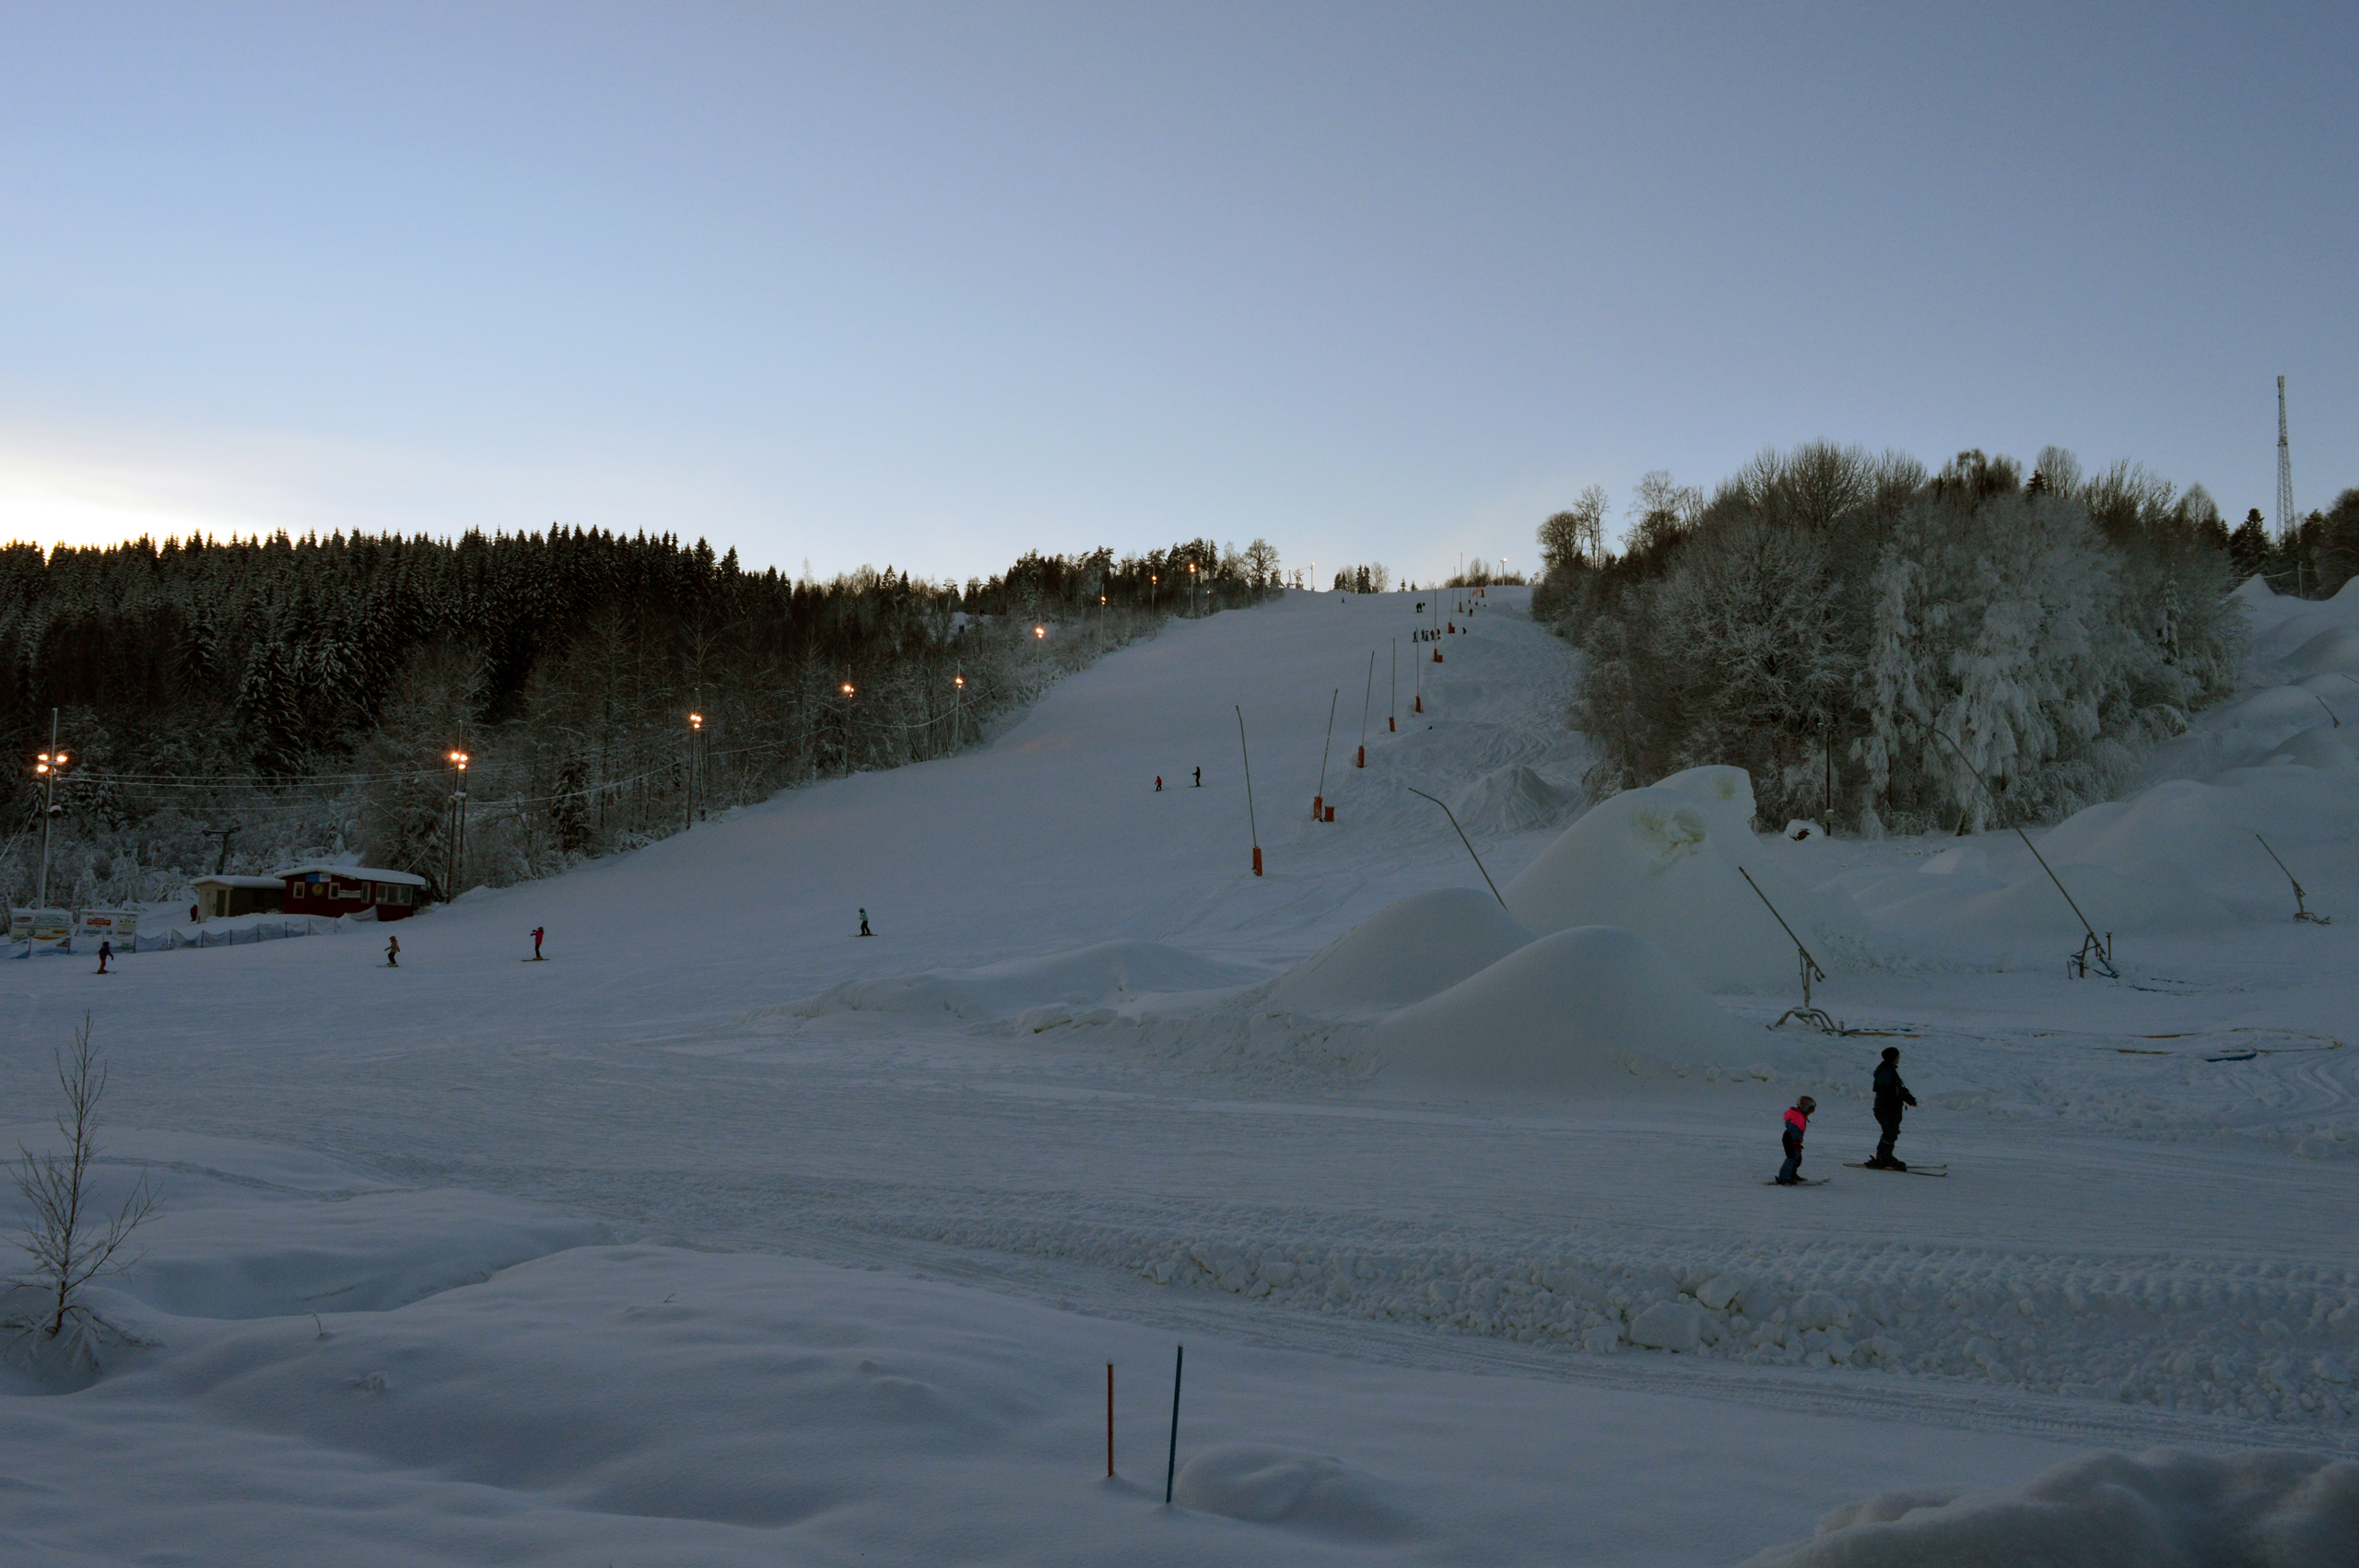 Hyr stuga i Dalsland. Slalombacken Högheden drivs av Åmål skicenter.